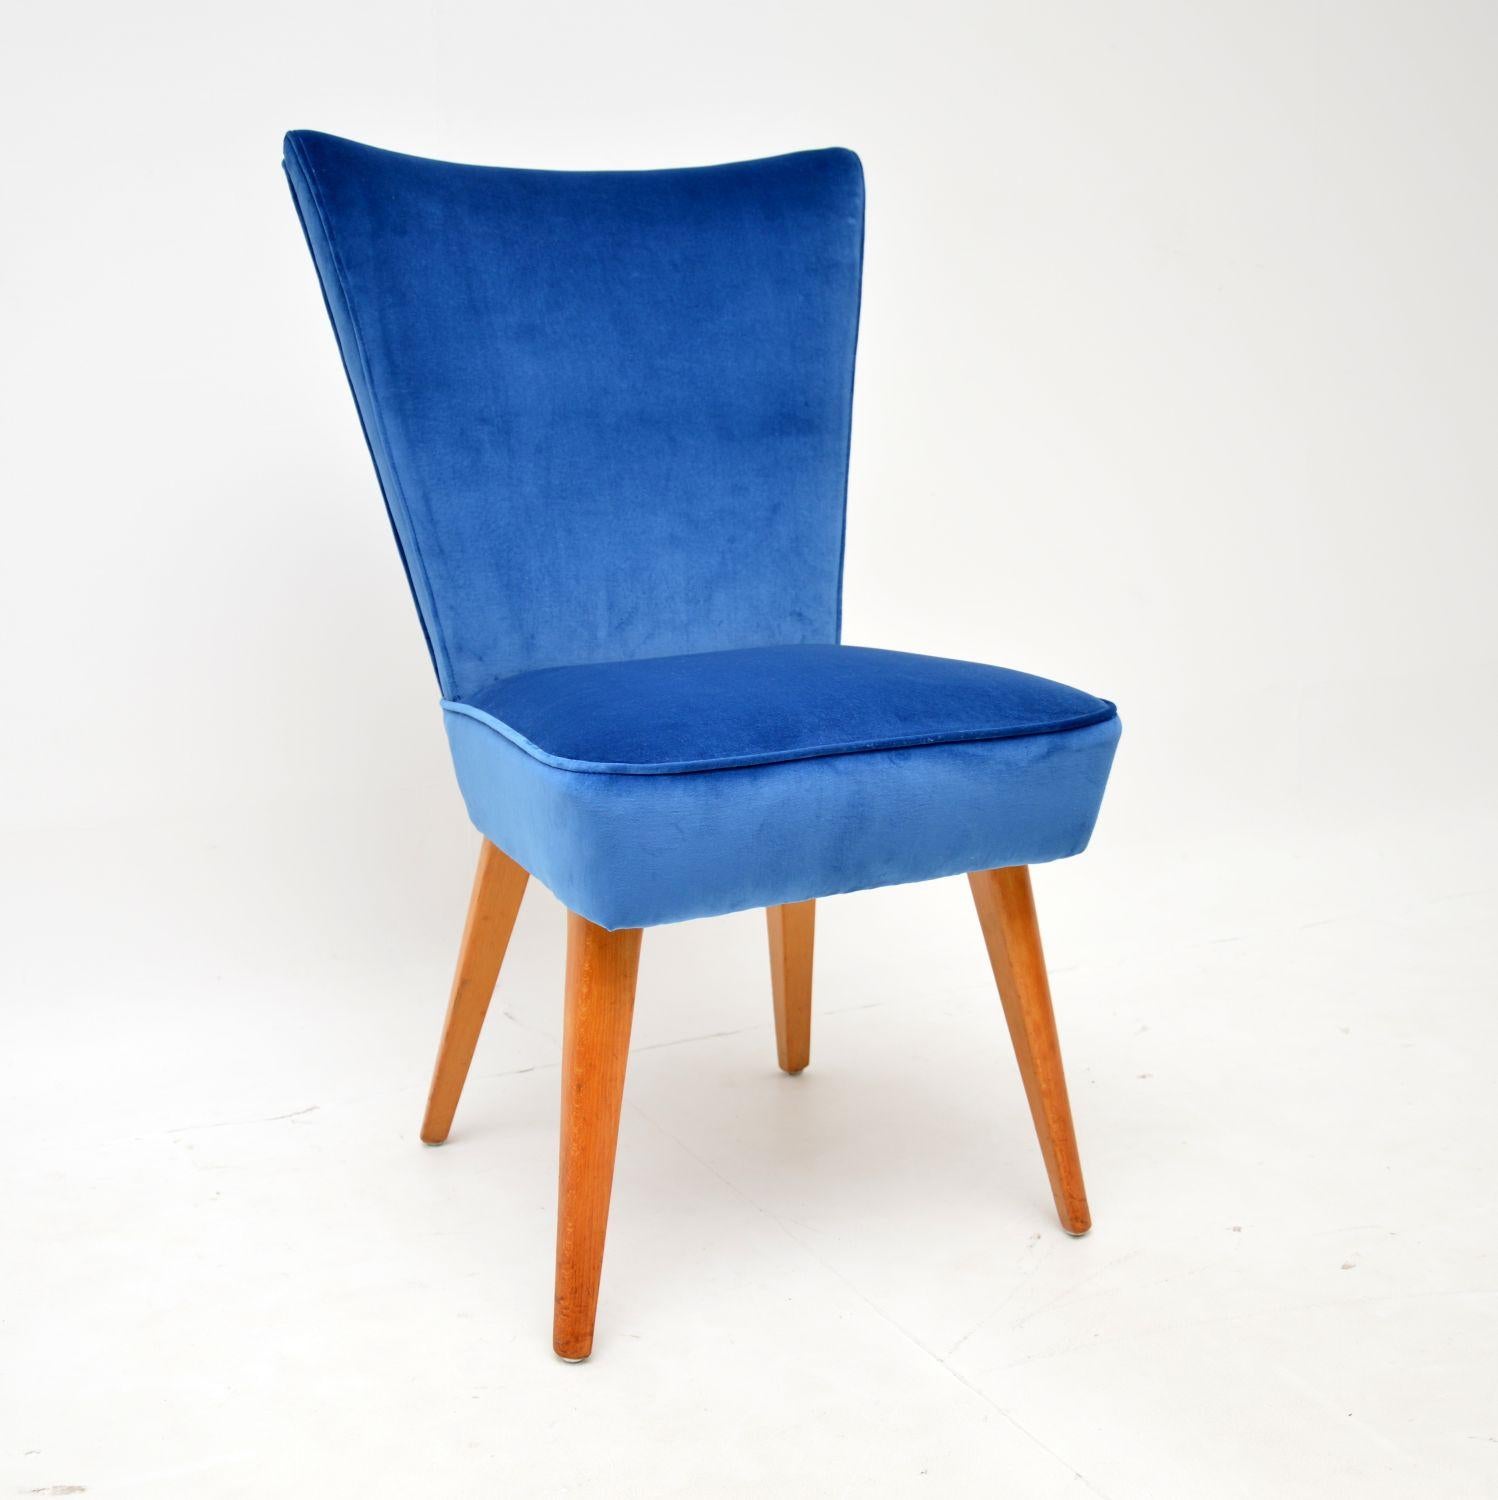 Une belle et élégante chaise de cocktail vintage, fabriquée par Howard By, datant des années 1950.

Son design est incroyablement élégant, avec un dossier en forme d'éventail et des pieds joliment fuselés.

Ce meuble a été récemment recouvert d'un